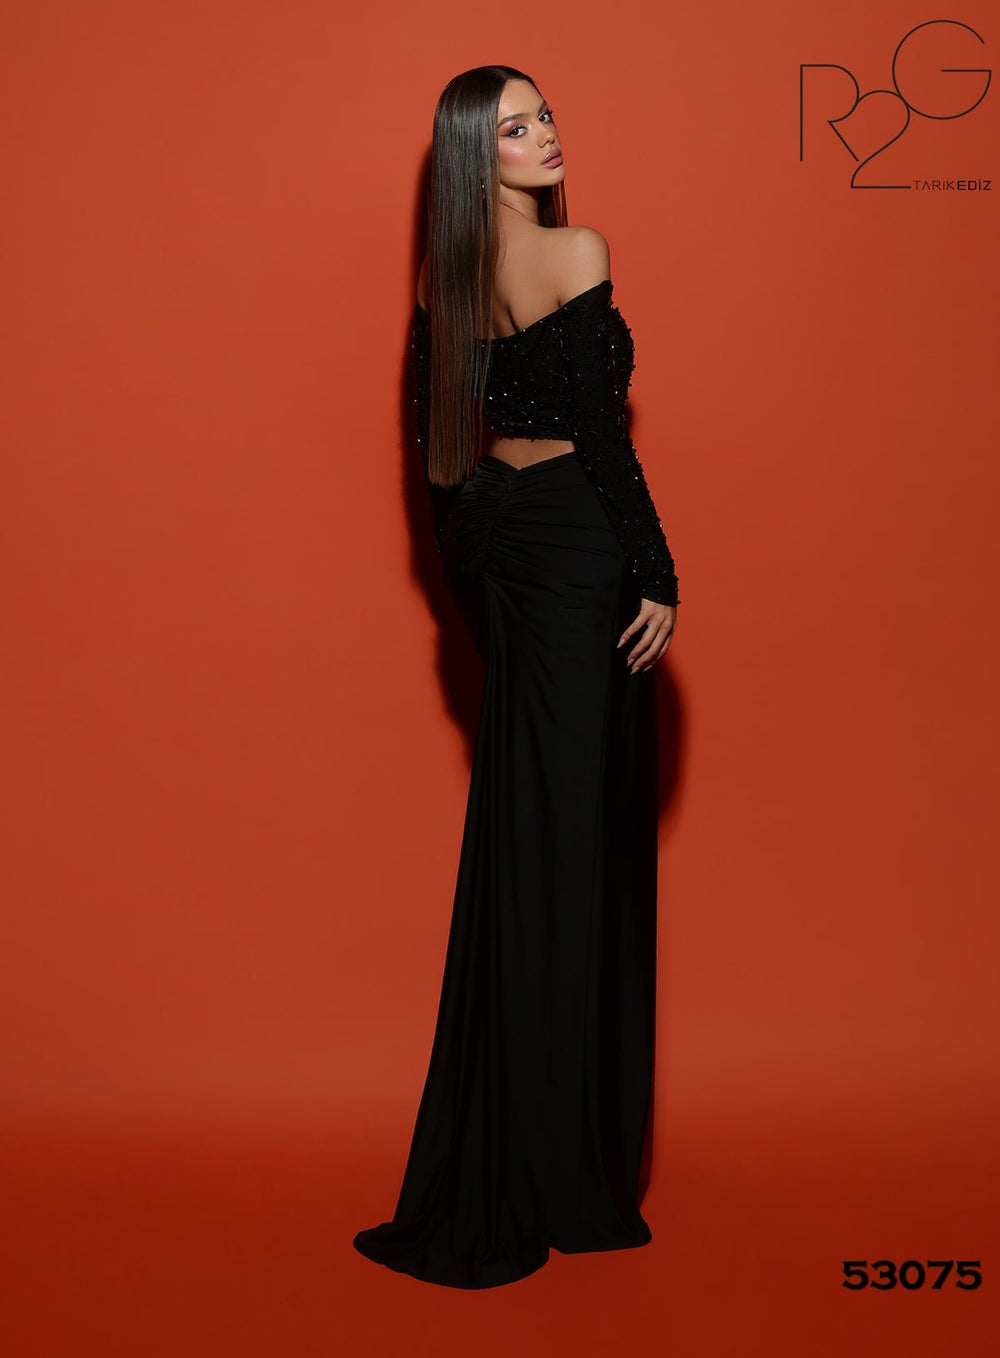 Ruched Formal Dress | SAHRA - Tarik Ediz Prom Dress 53075 - Morvarieds Fashion